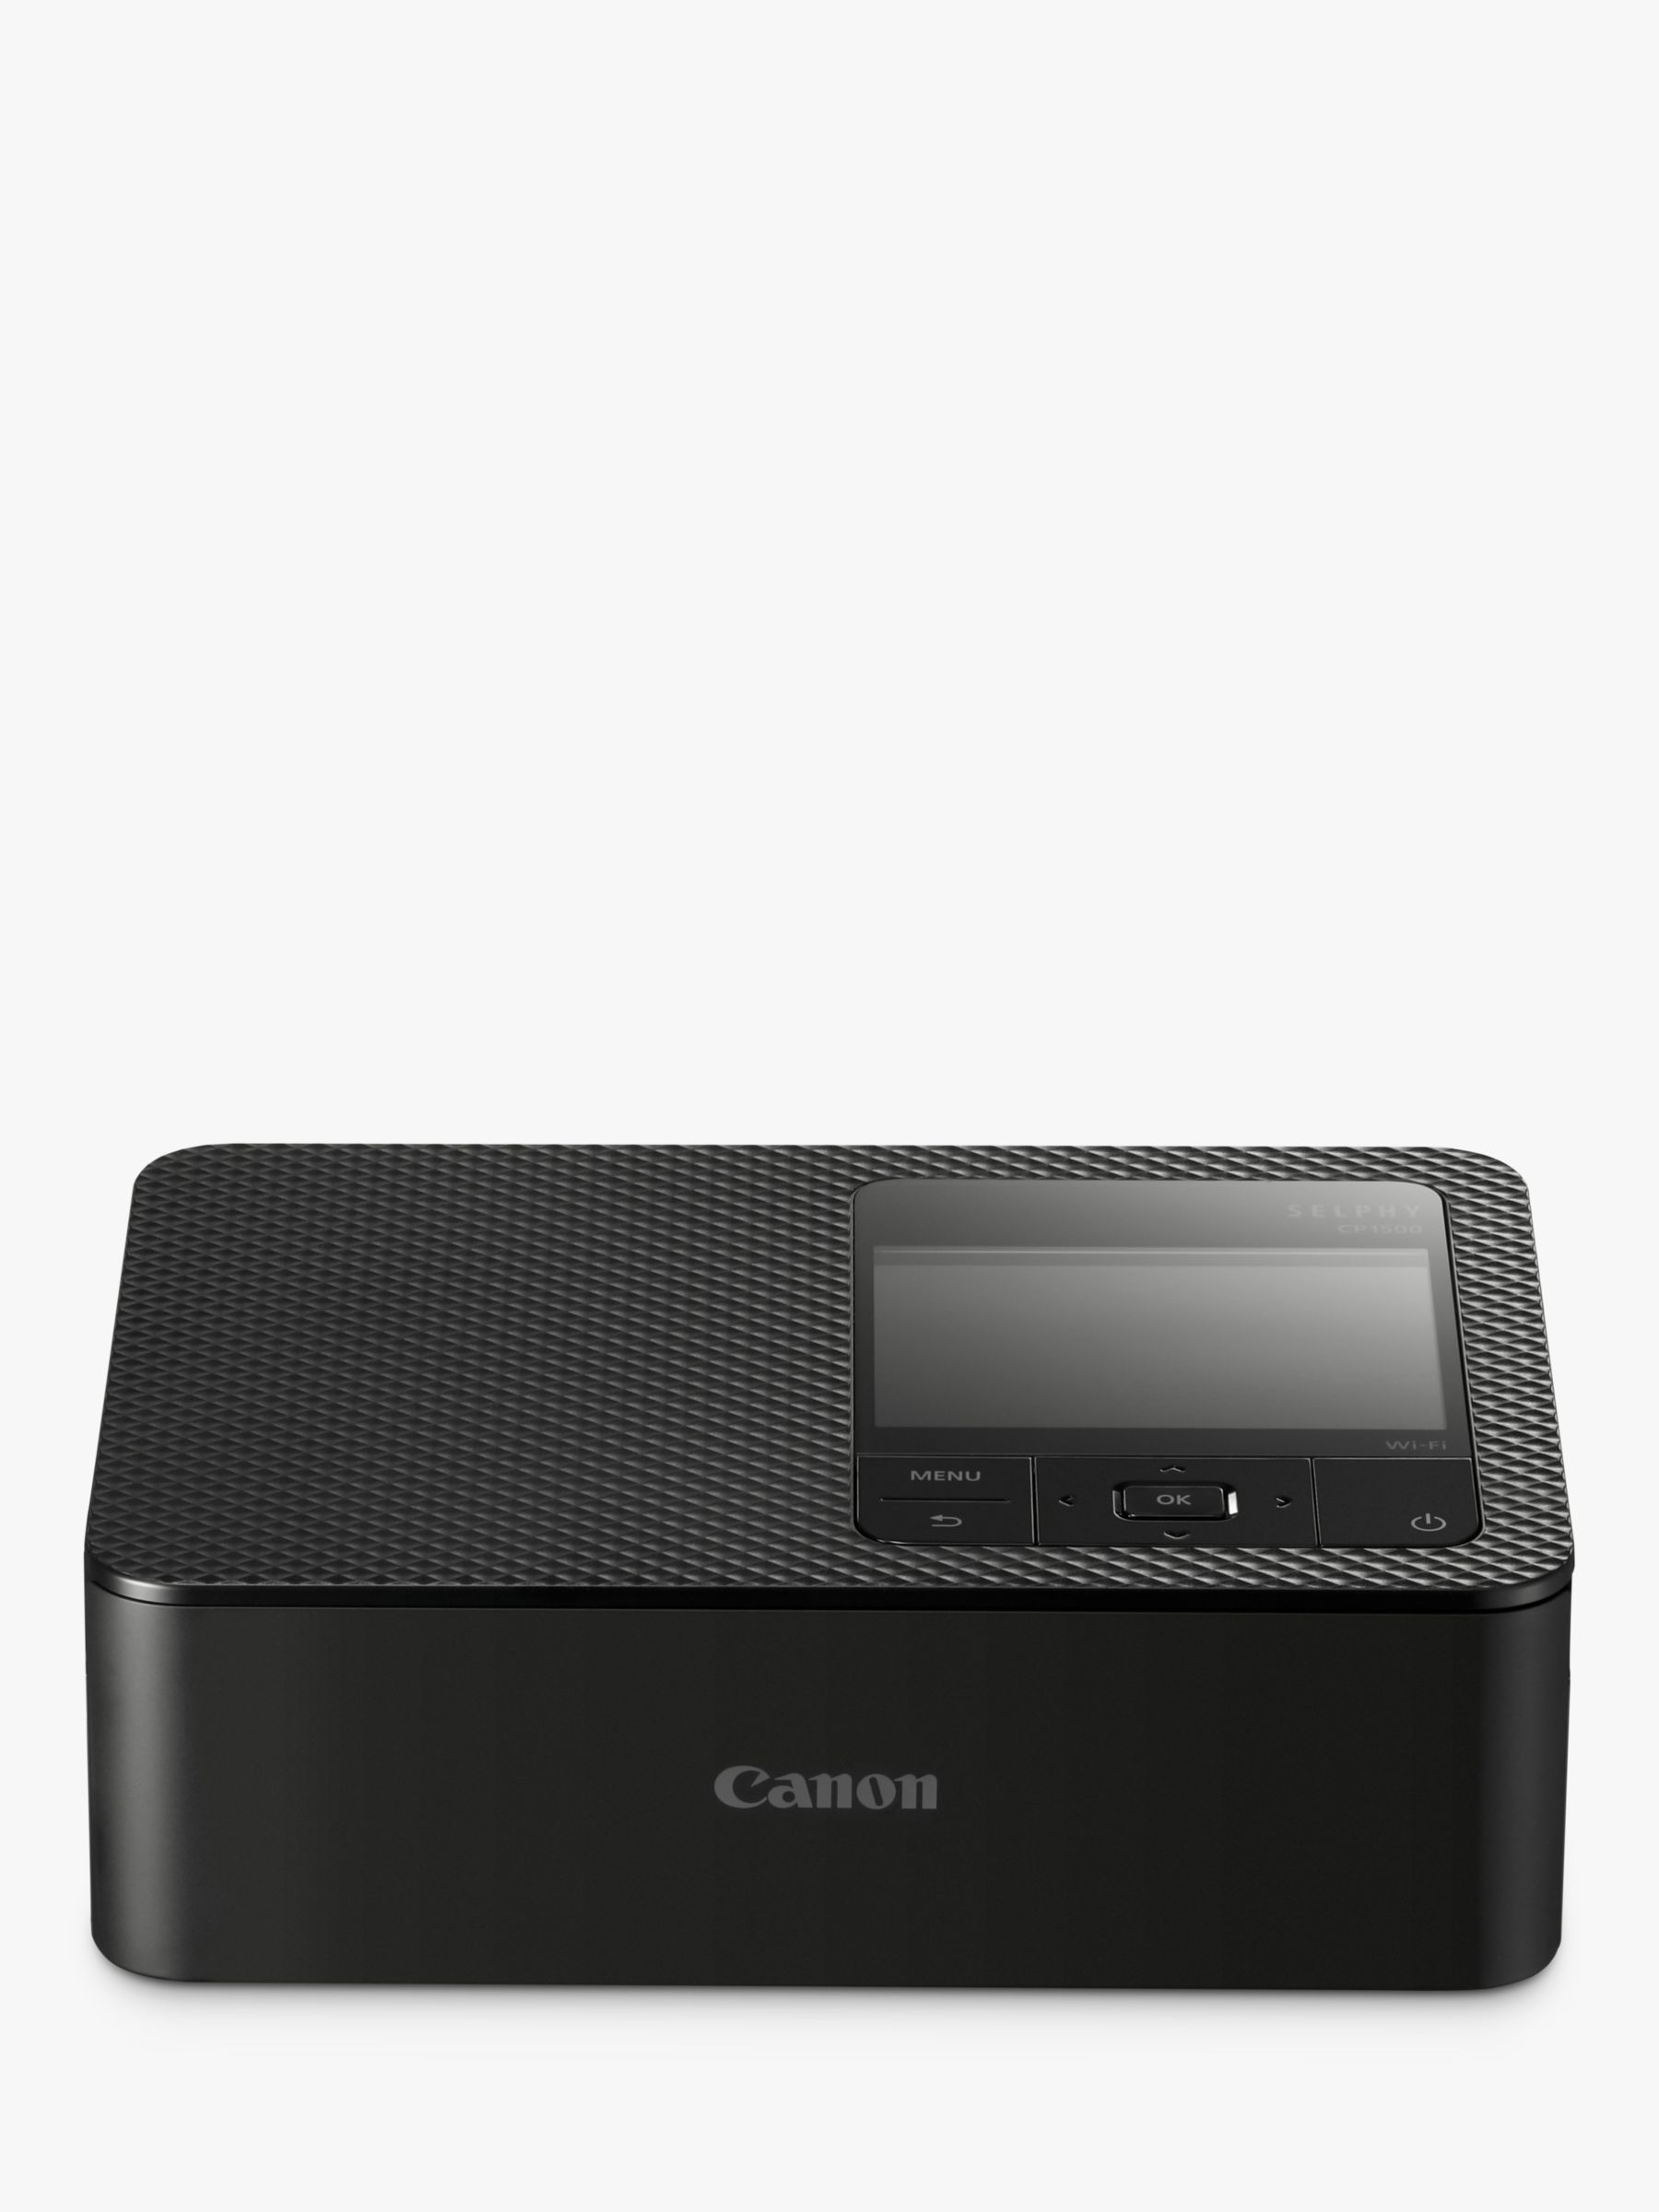 Canon SELPHY CP1500 Compact Photo Printer Black